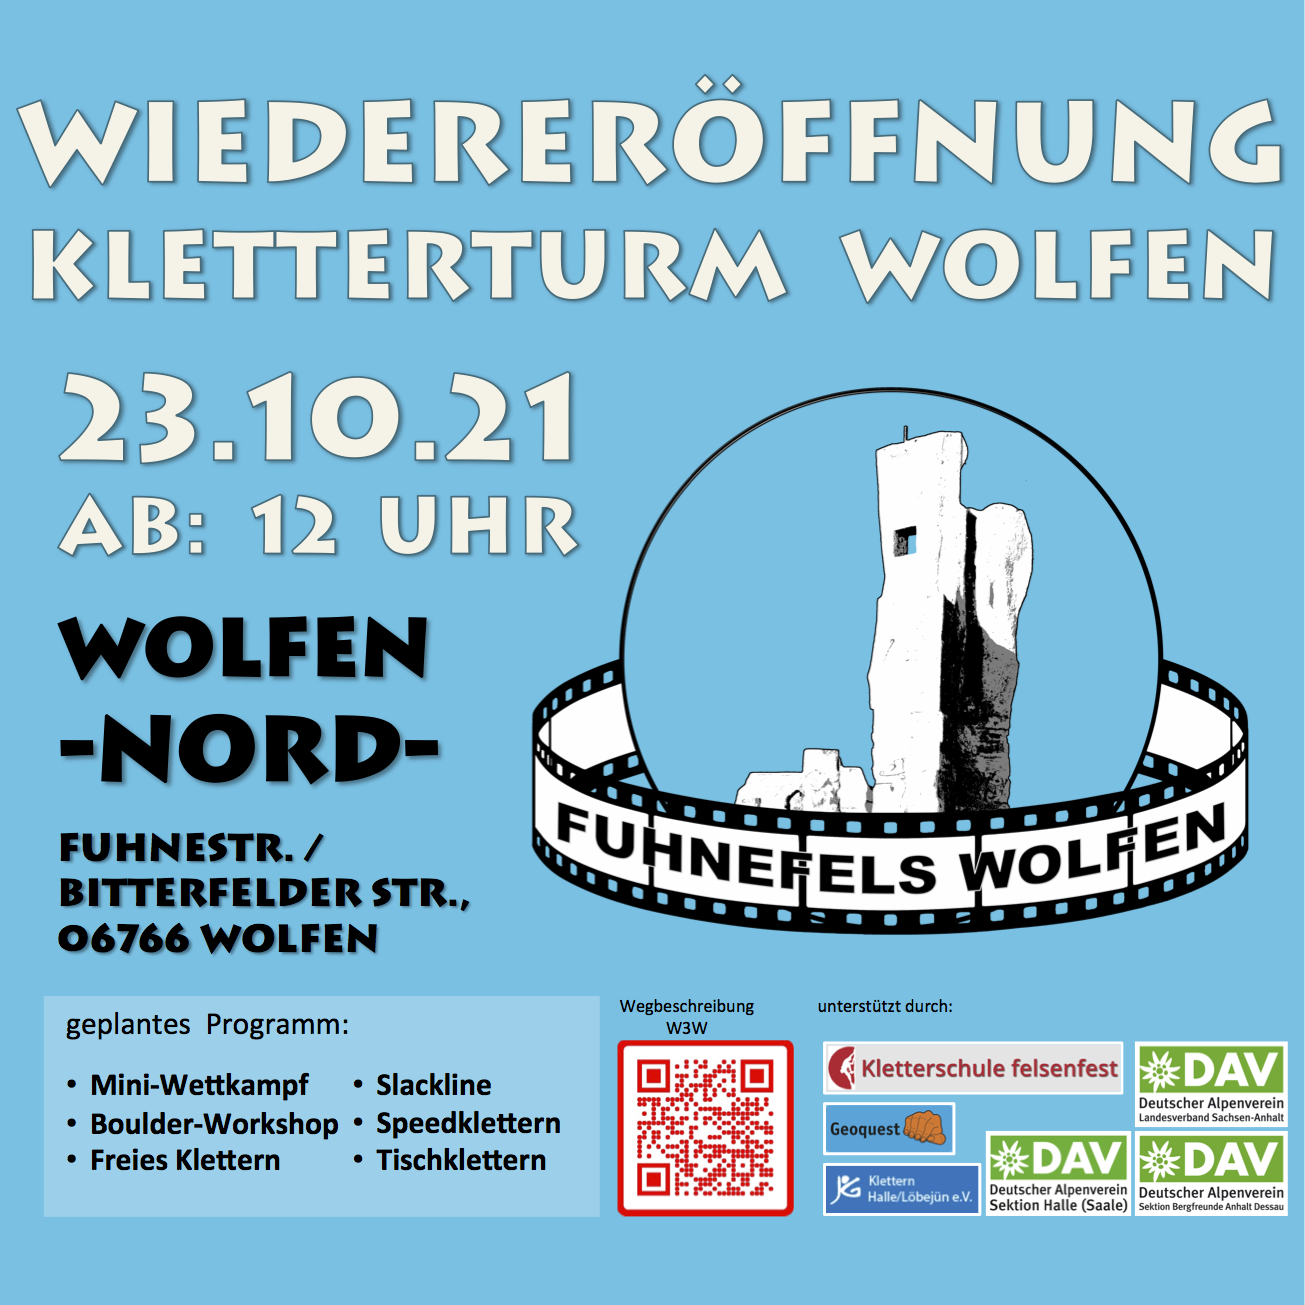 Halle/Löbejün: Wiedereröffnung Kletterturm Wolfen am 23.10.